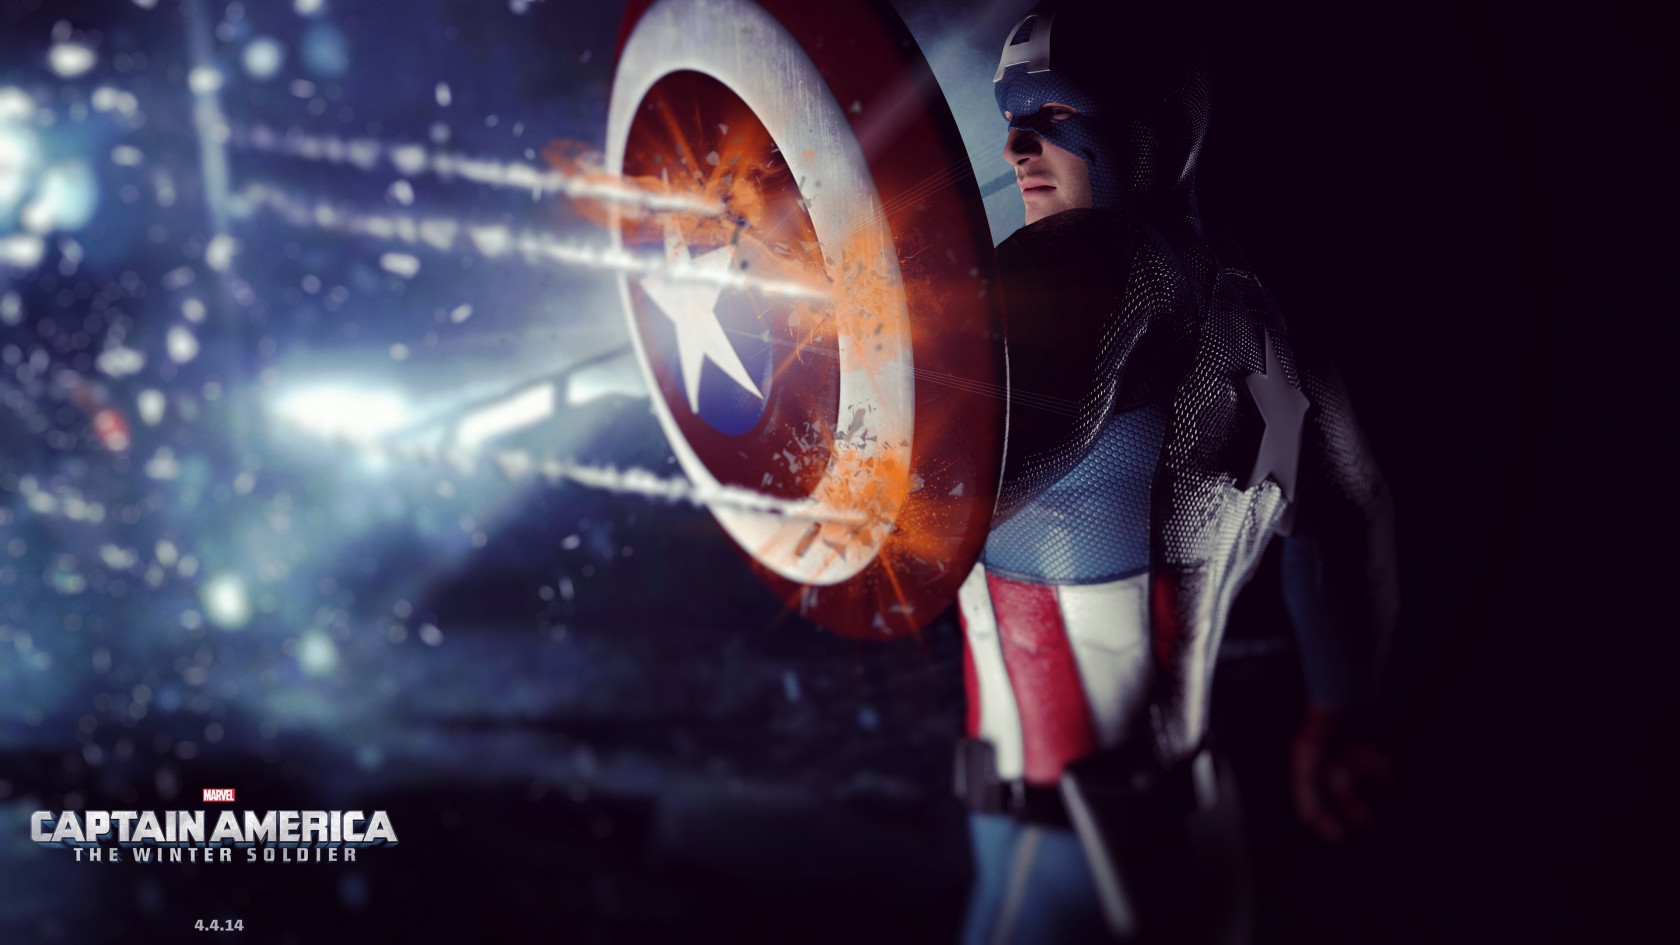 Captain America 2014 for 1680 x 945 HDTV resolution